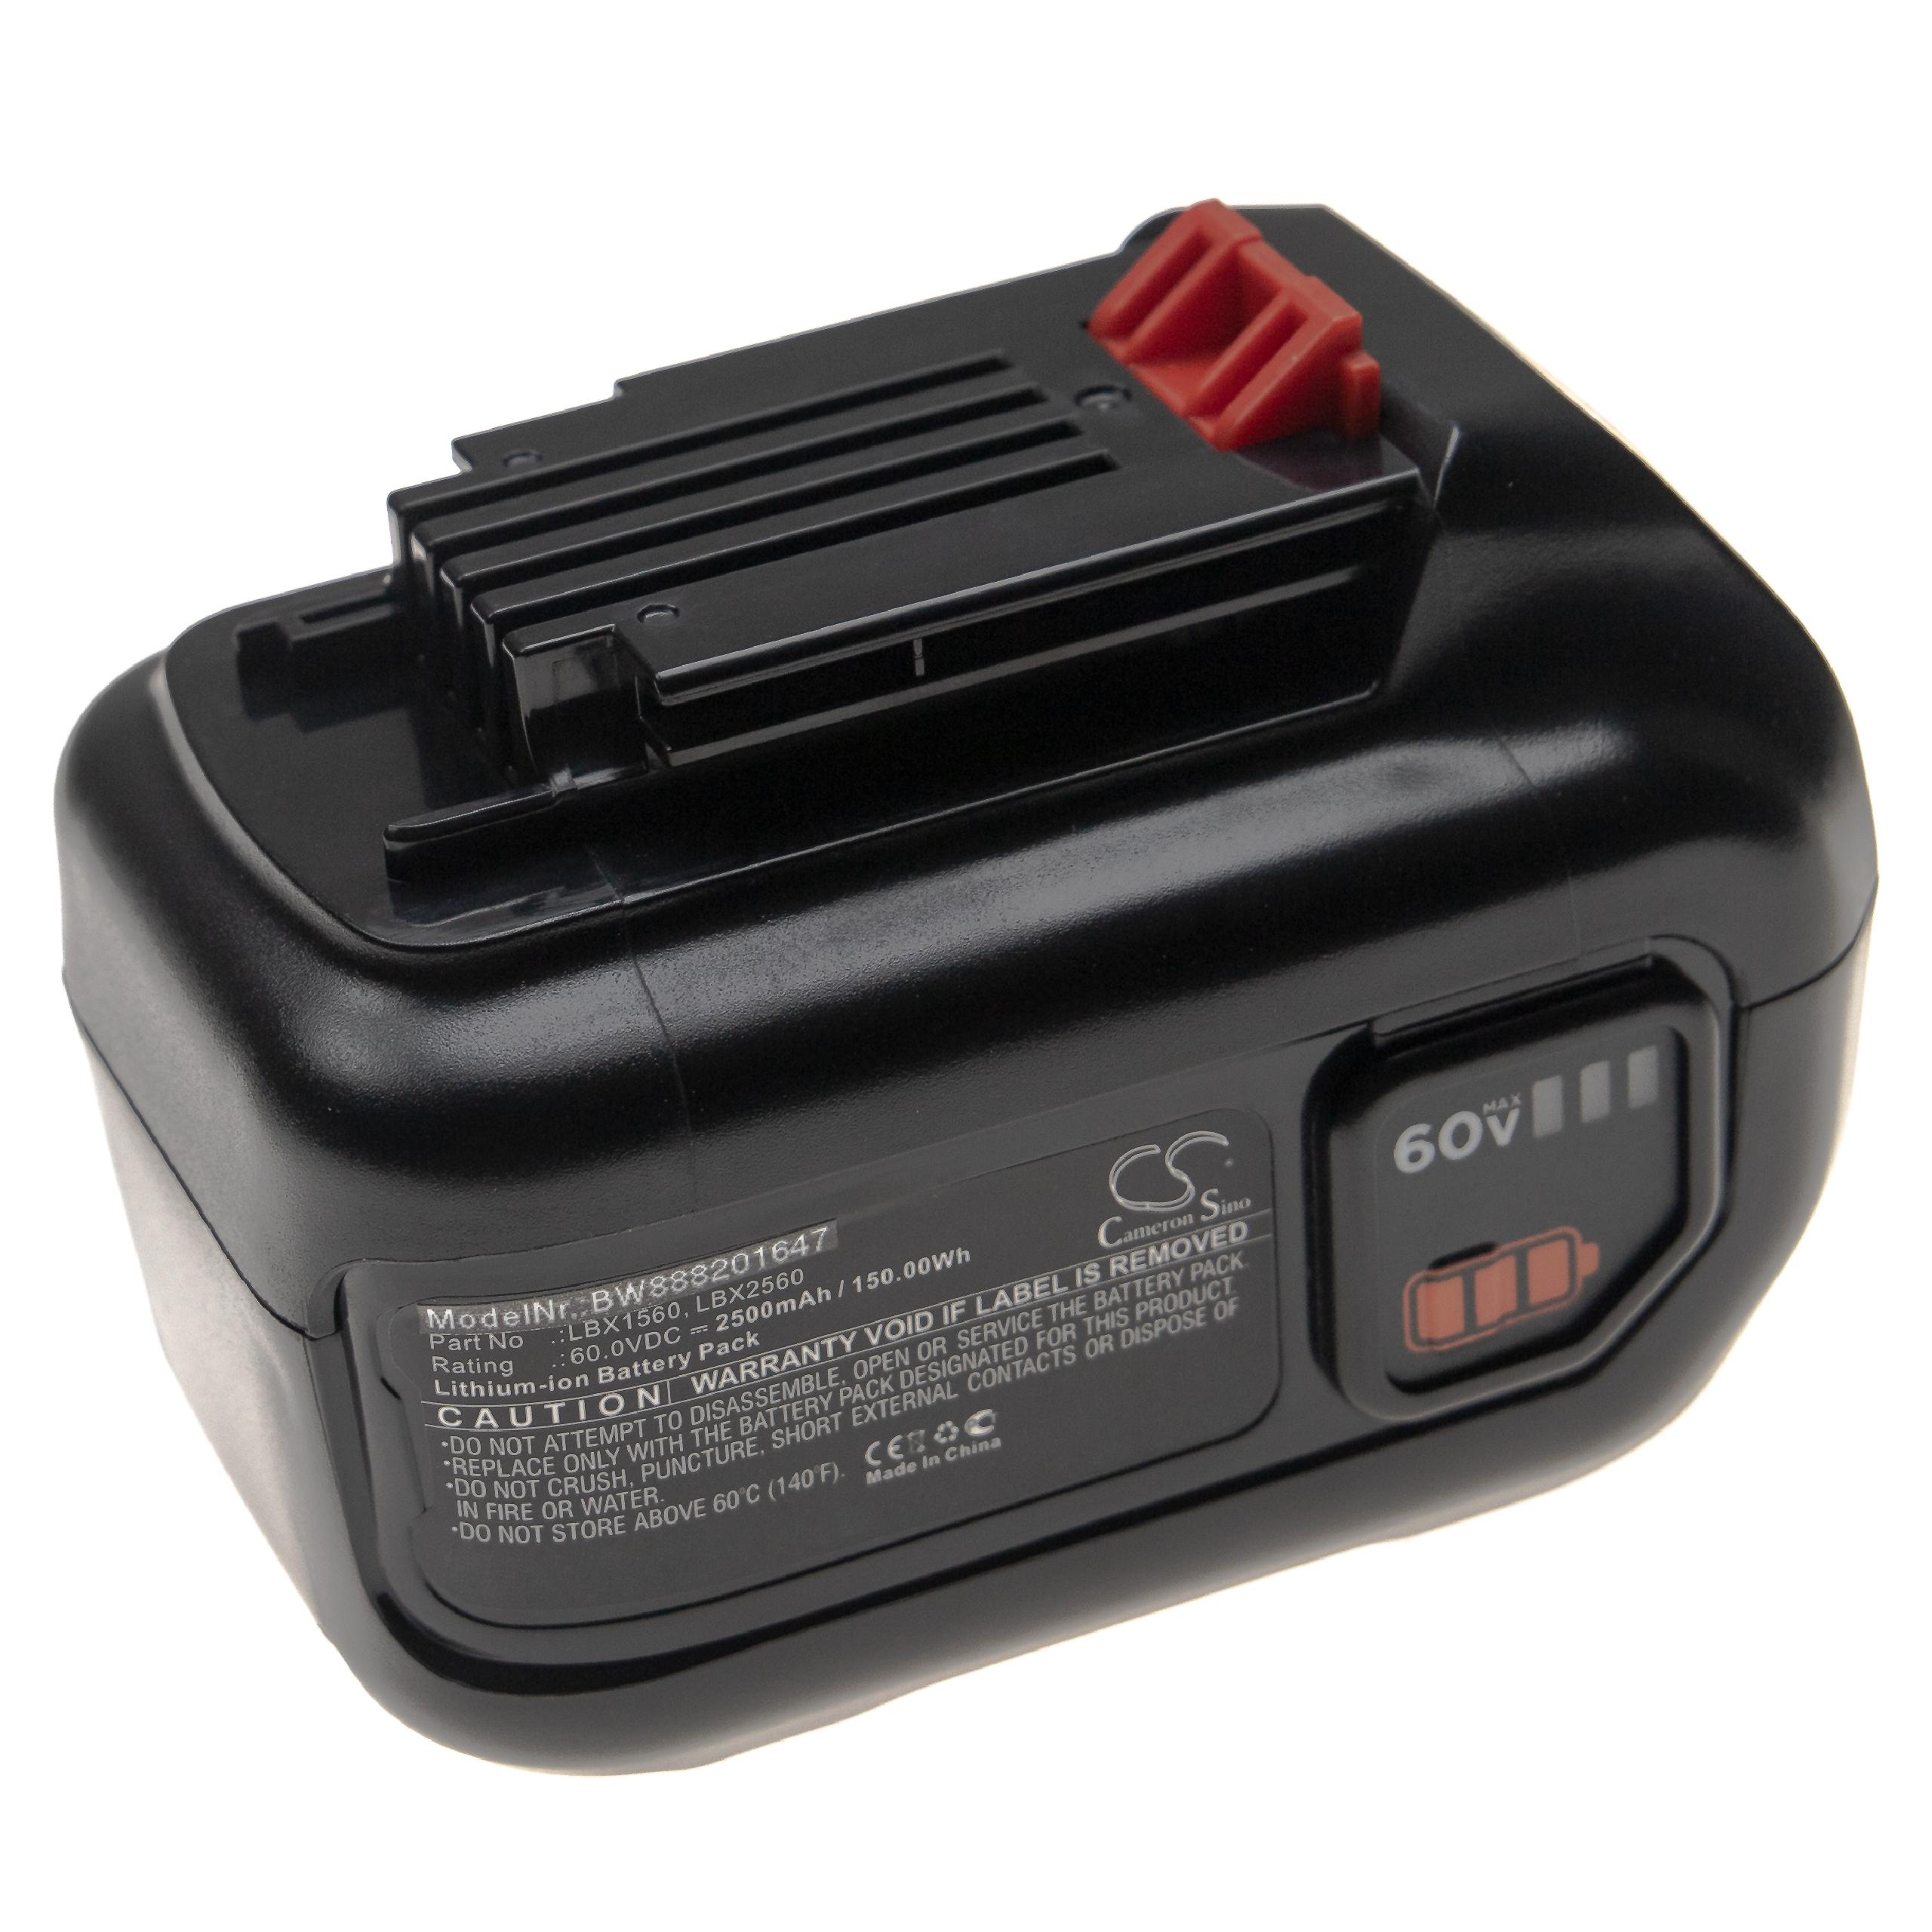 Batterie remplace Black & Decker LBX1560, LBX2560 pour outil électrique - 2500 mAh, 60 V, Li-ion